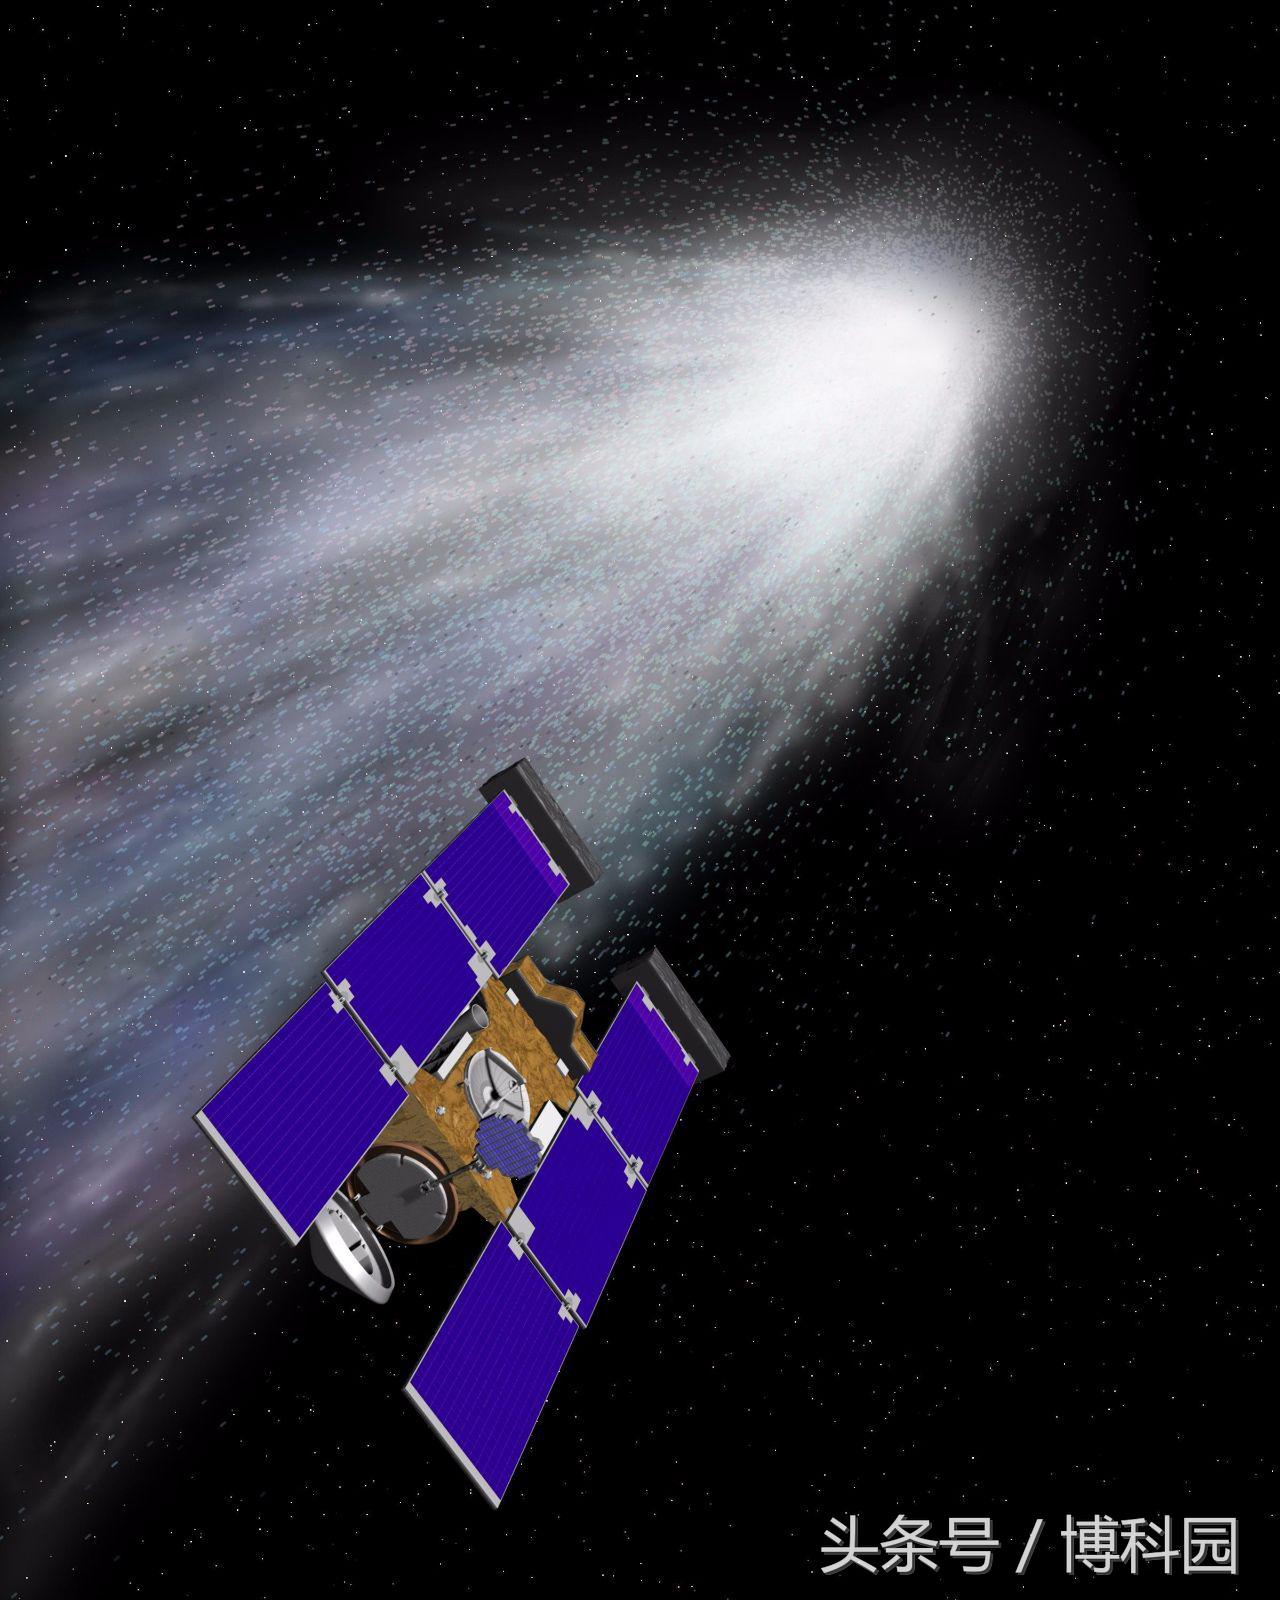 彗星为研究太阳系起源提供了难得的机会